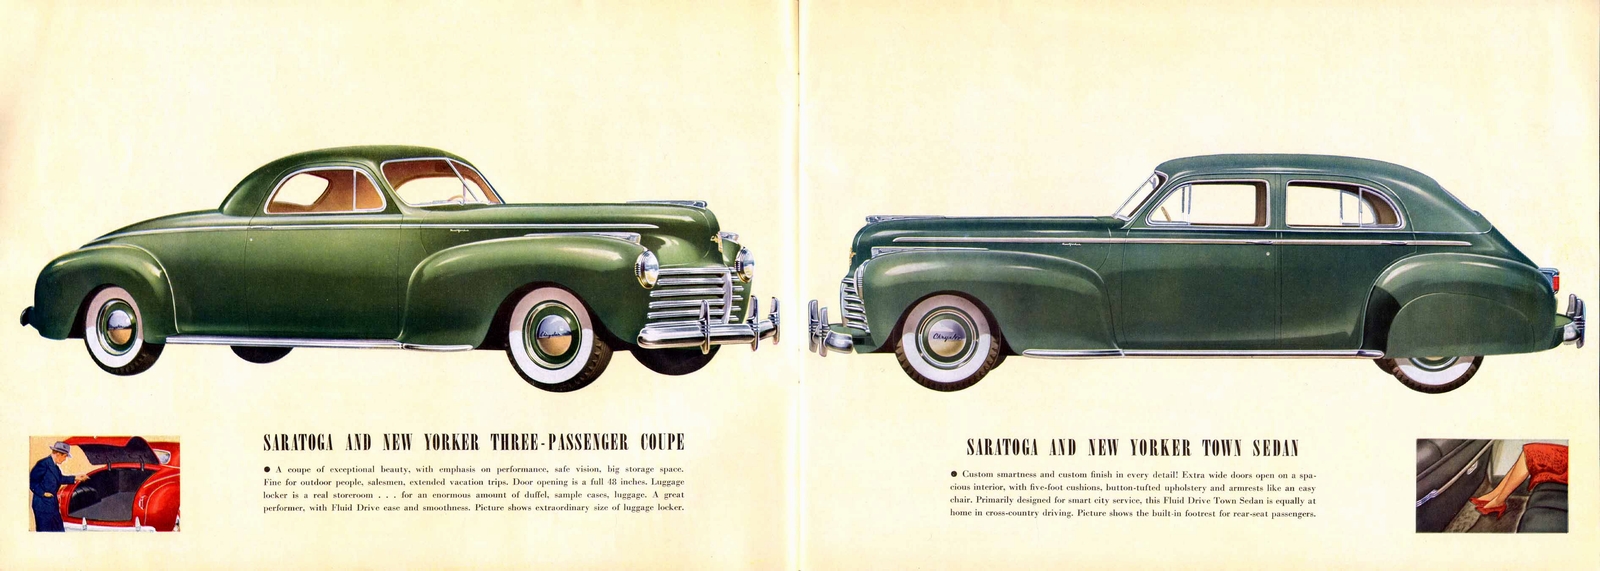 n_1941 Chrysler Prestige-08-09.jpg